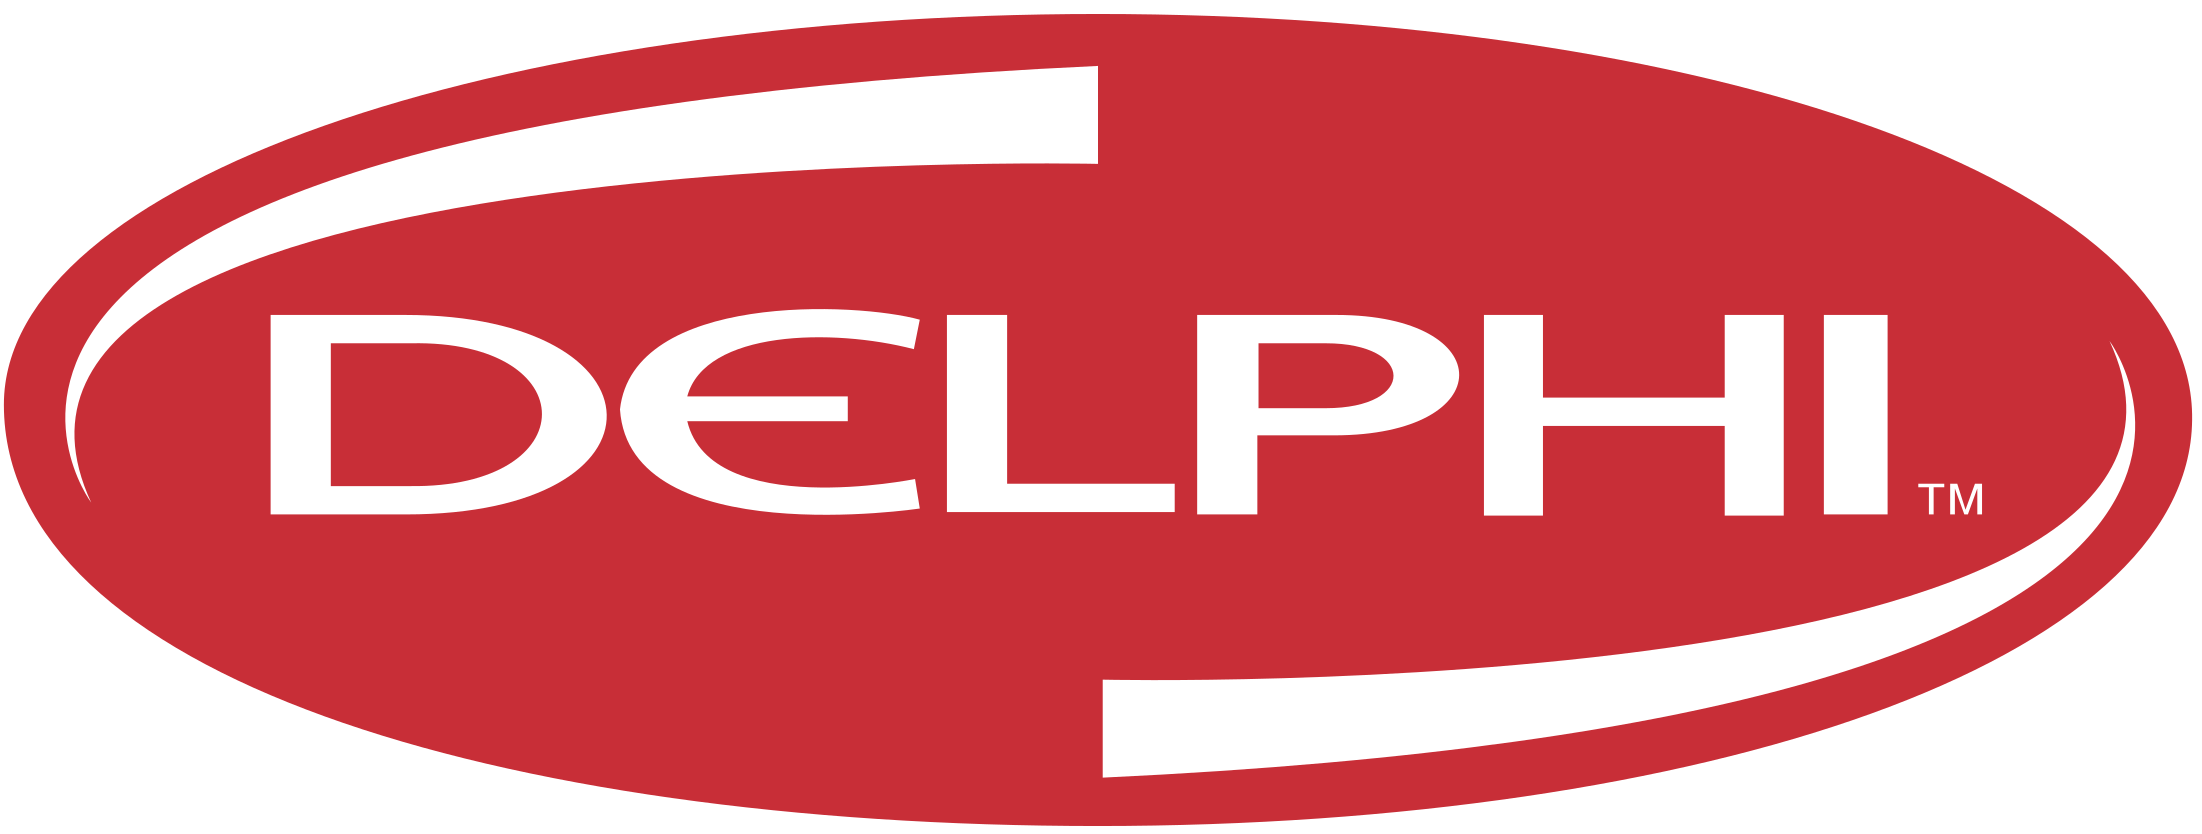 delphi-2-logo-png-transparent